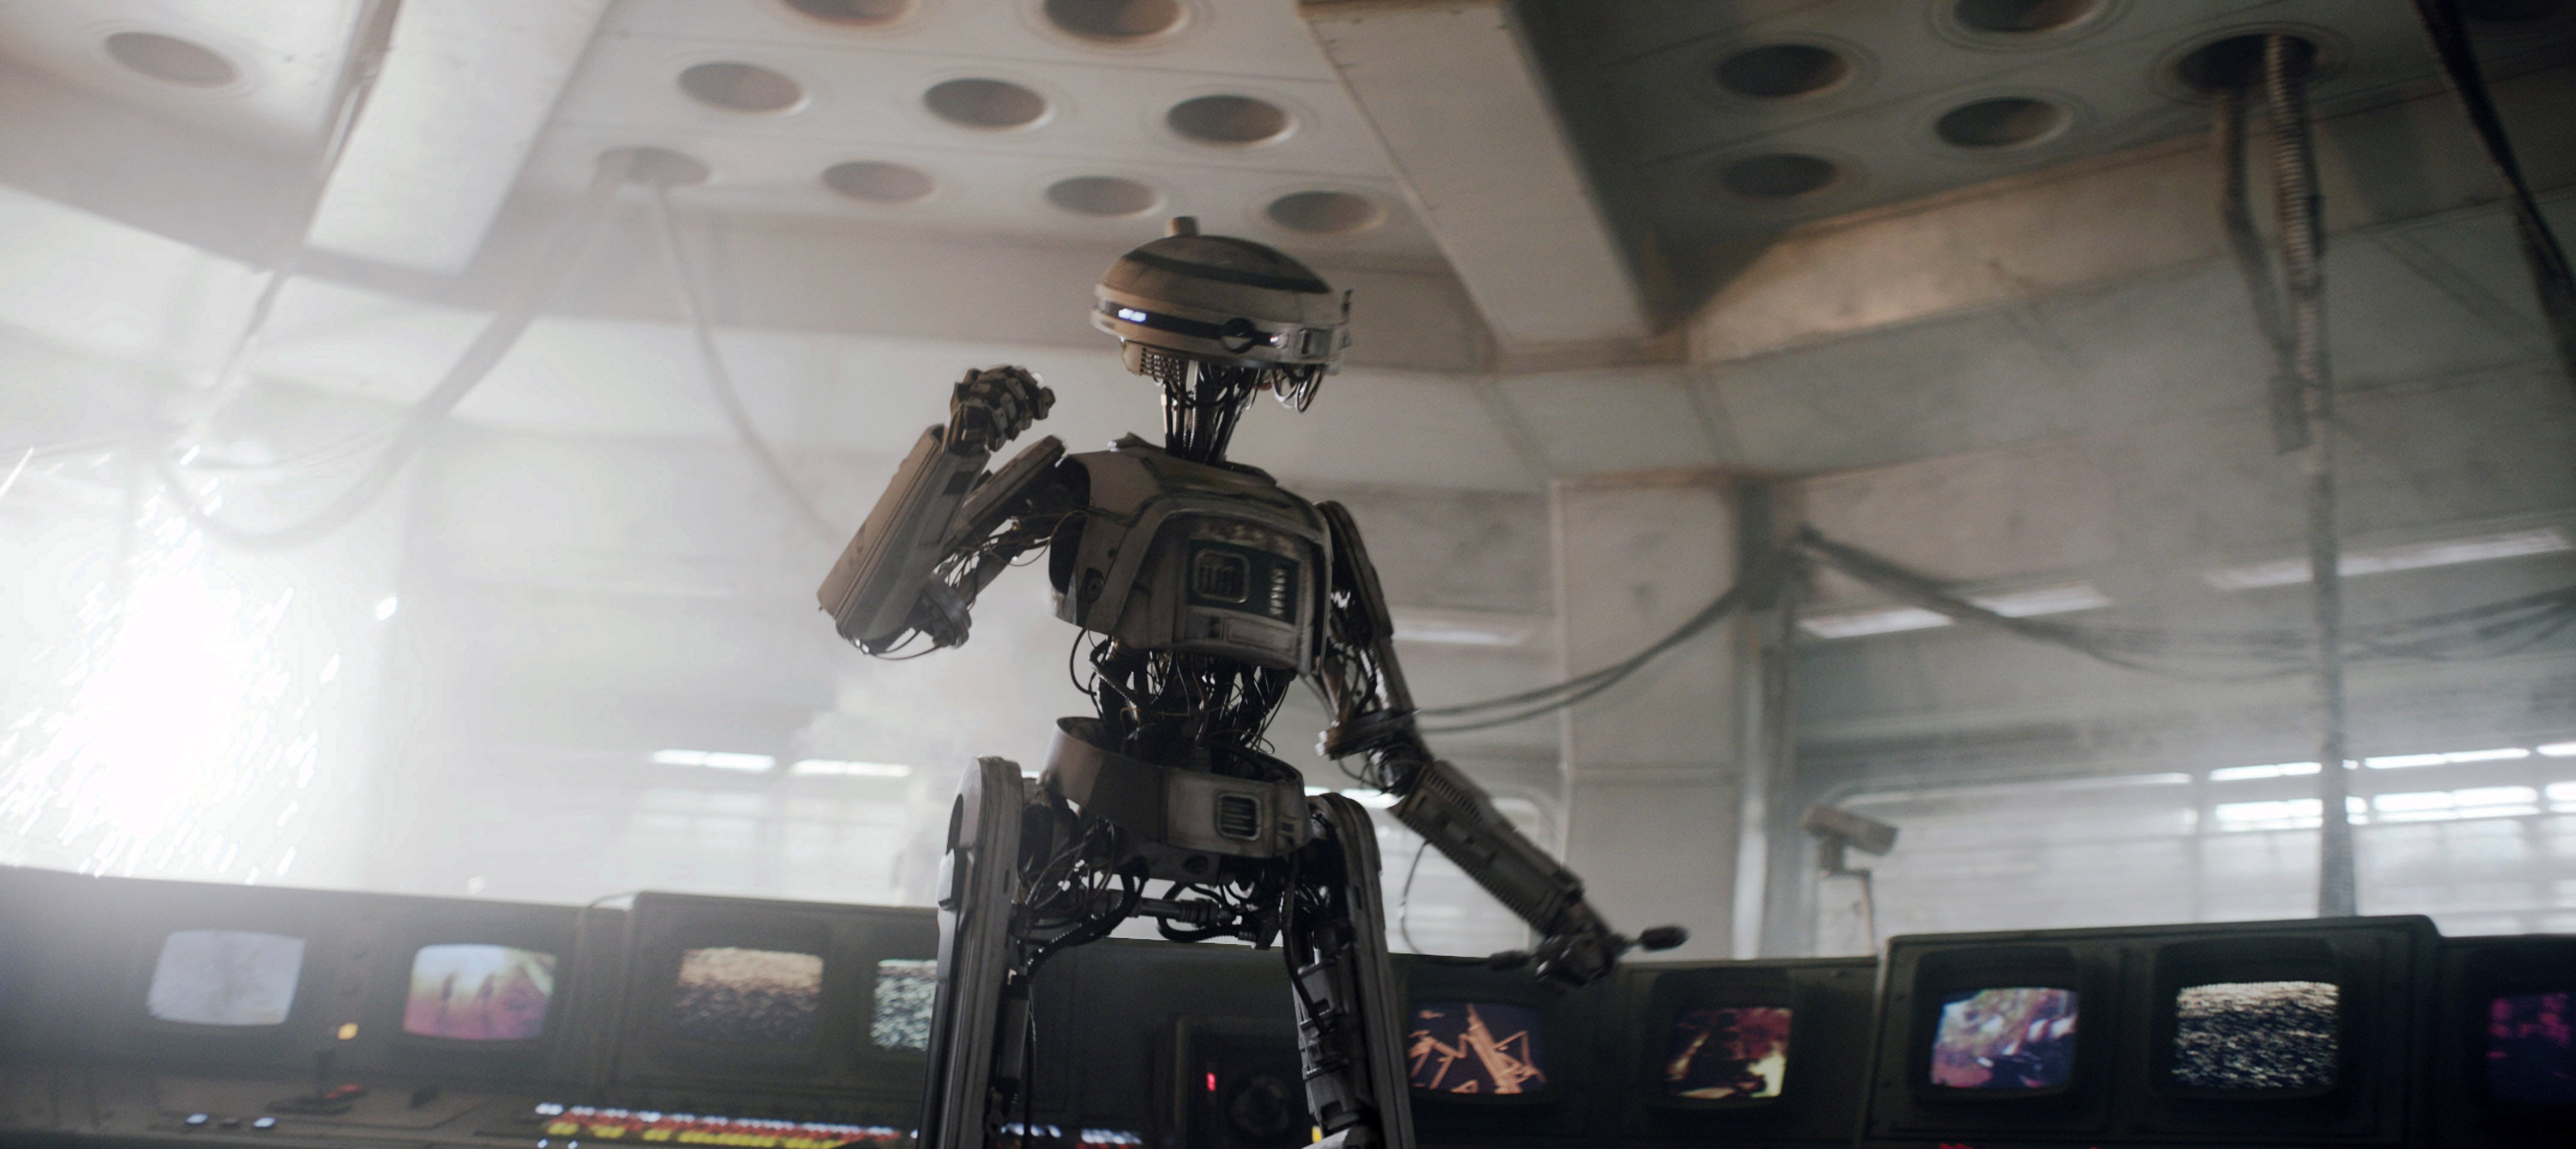 24 Best Robot Movies  POPSUGAR Entertainment